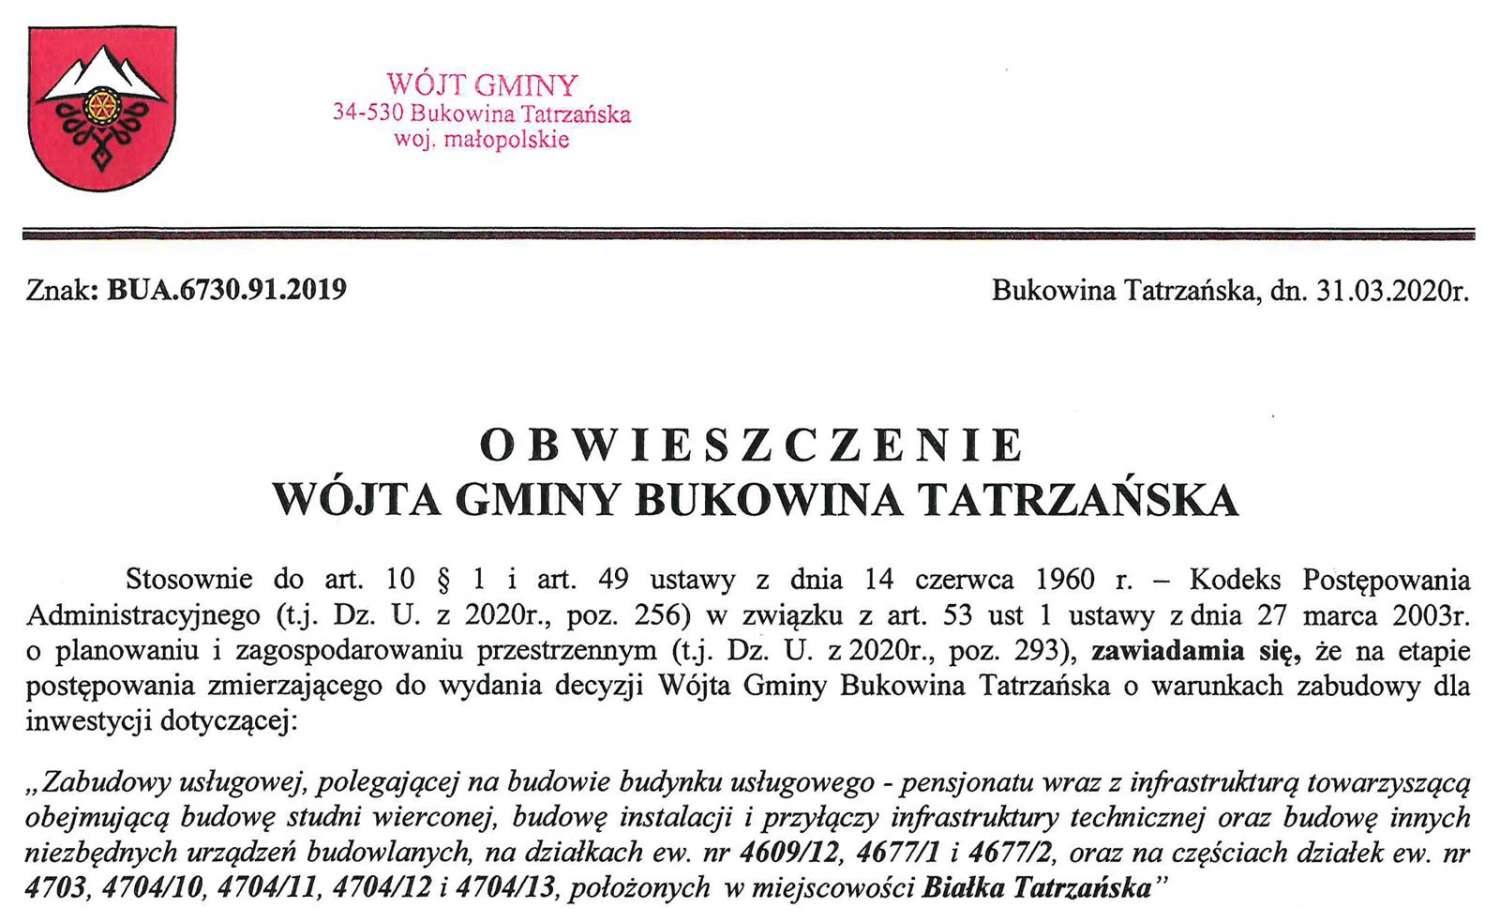 Obwieszczenie Wójta Gminy Bukowina Tatrzańska BUA 6730.91.2019